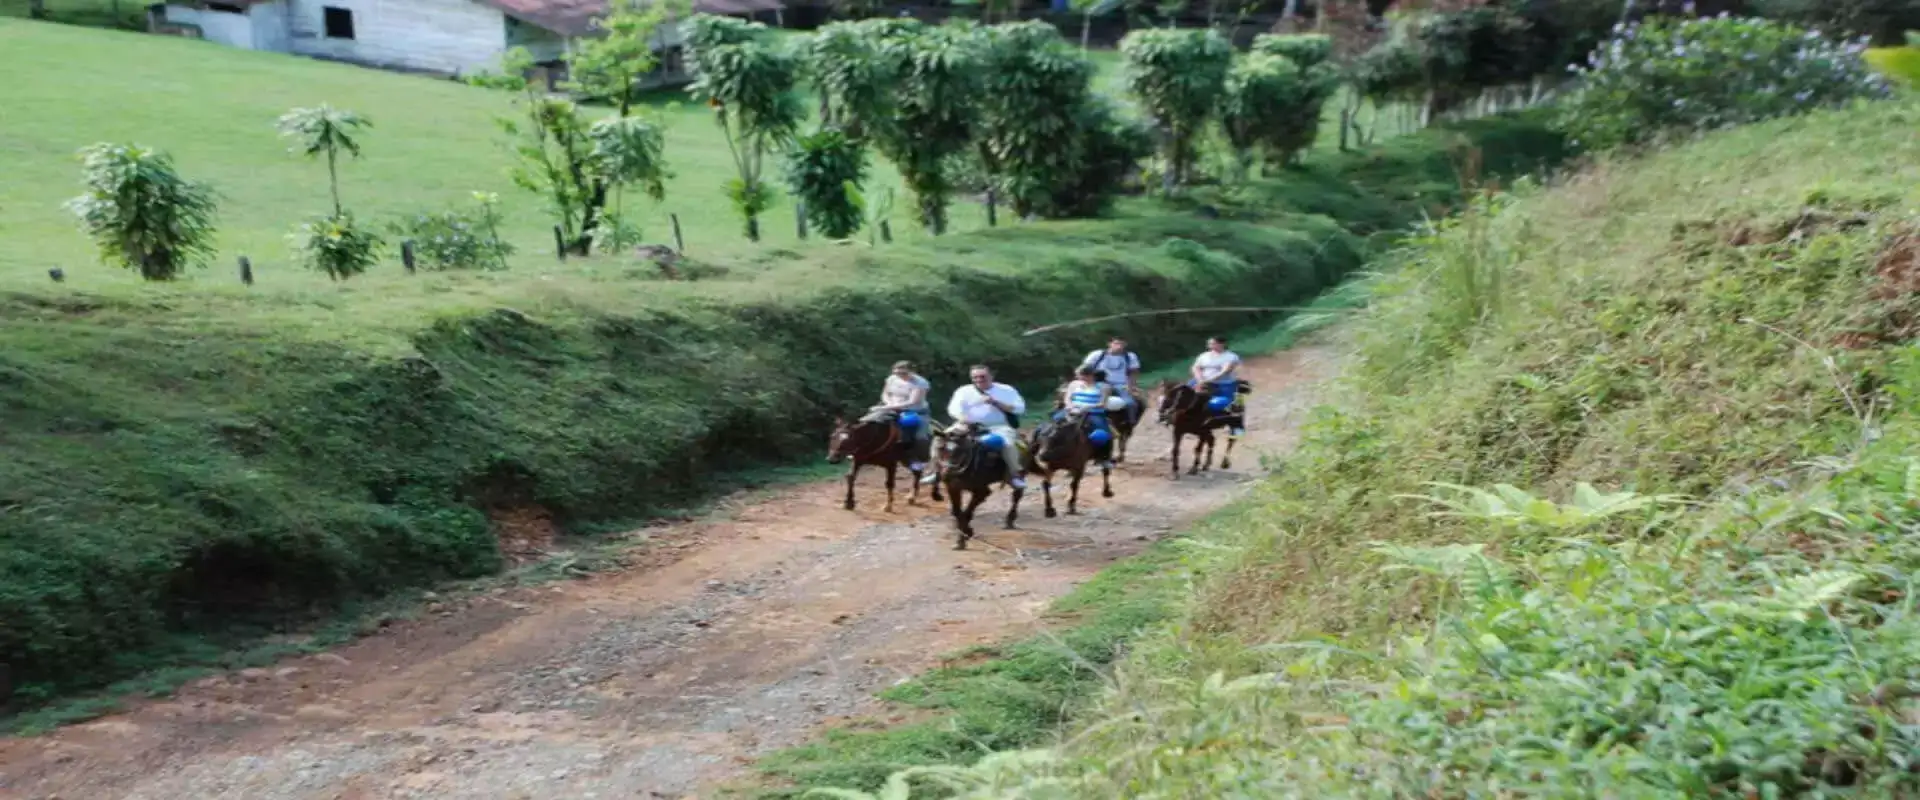 Horseback riding in Manuel Antonio | Costa Rica